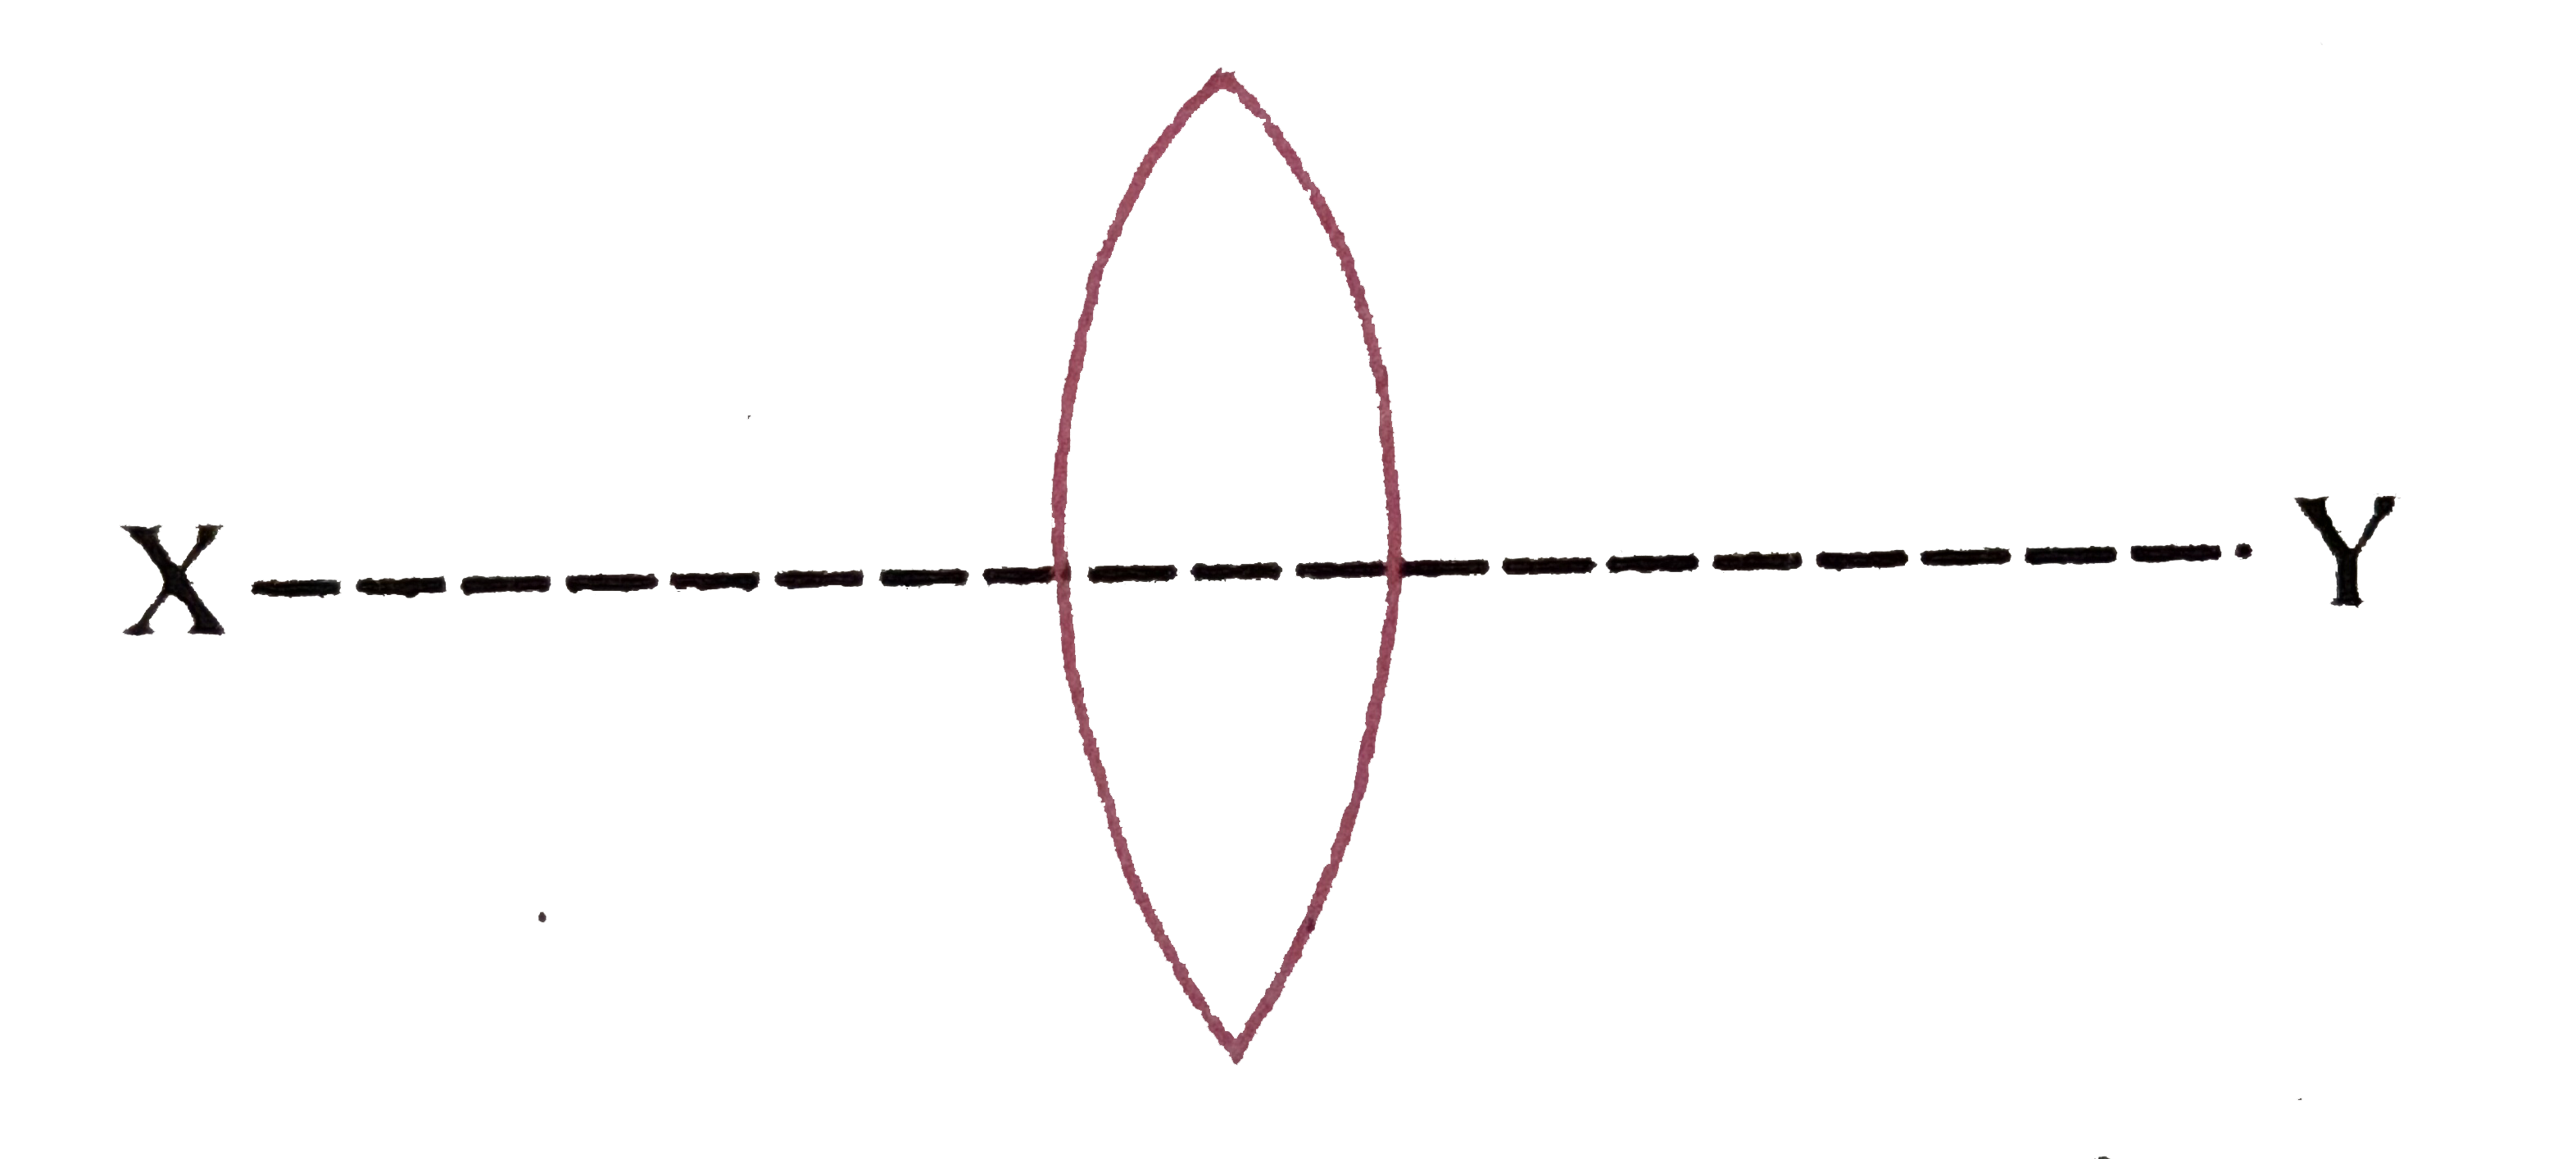 एक सम उभयोत्तल लेंस को चित्रानुसार XY तल द्वारा दो भागों में काट दिया जाता है। यदि उभयोत्तल लेंस की फोकस-दूरी f हो, तो प्रत्येक भाग की फोकस-दूरी क्या होगी ?